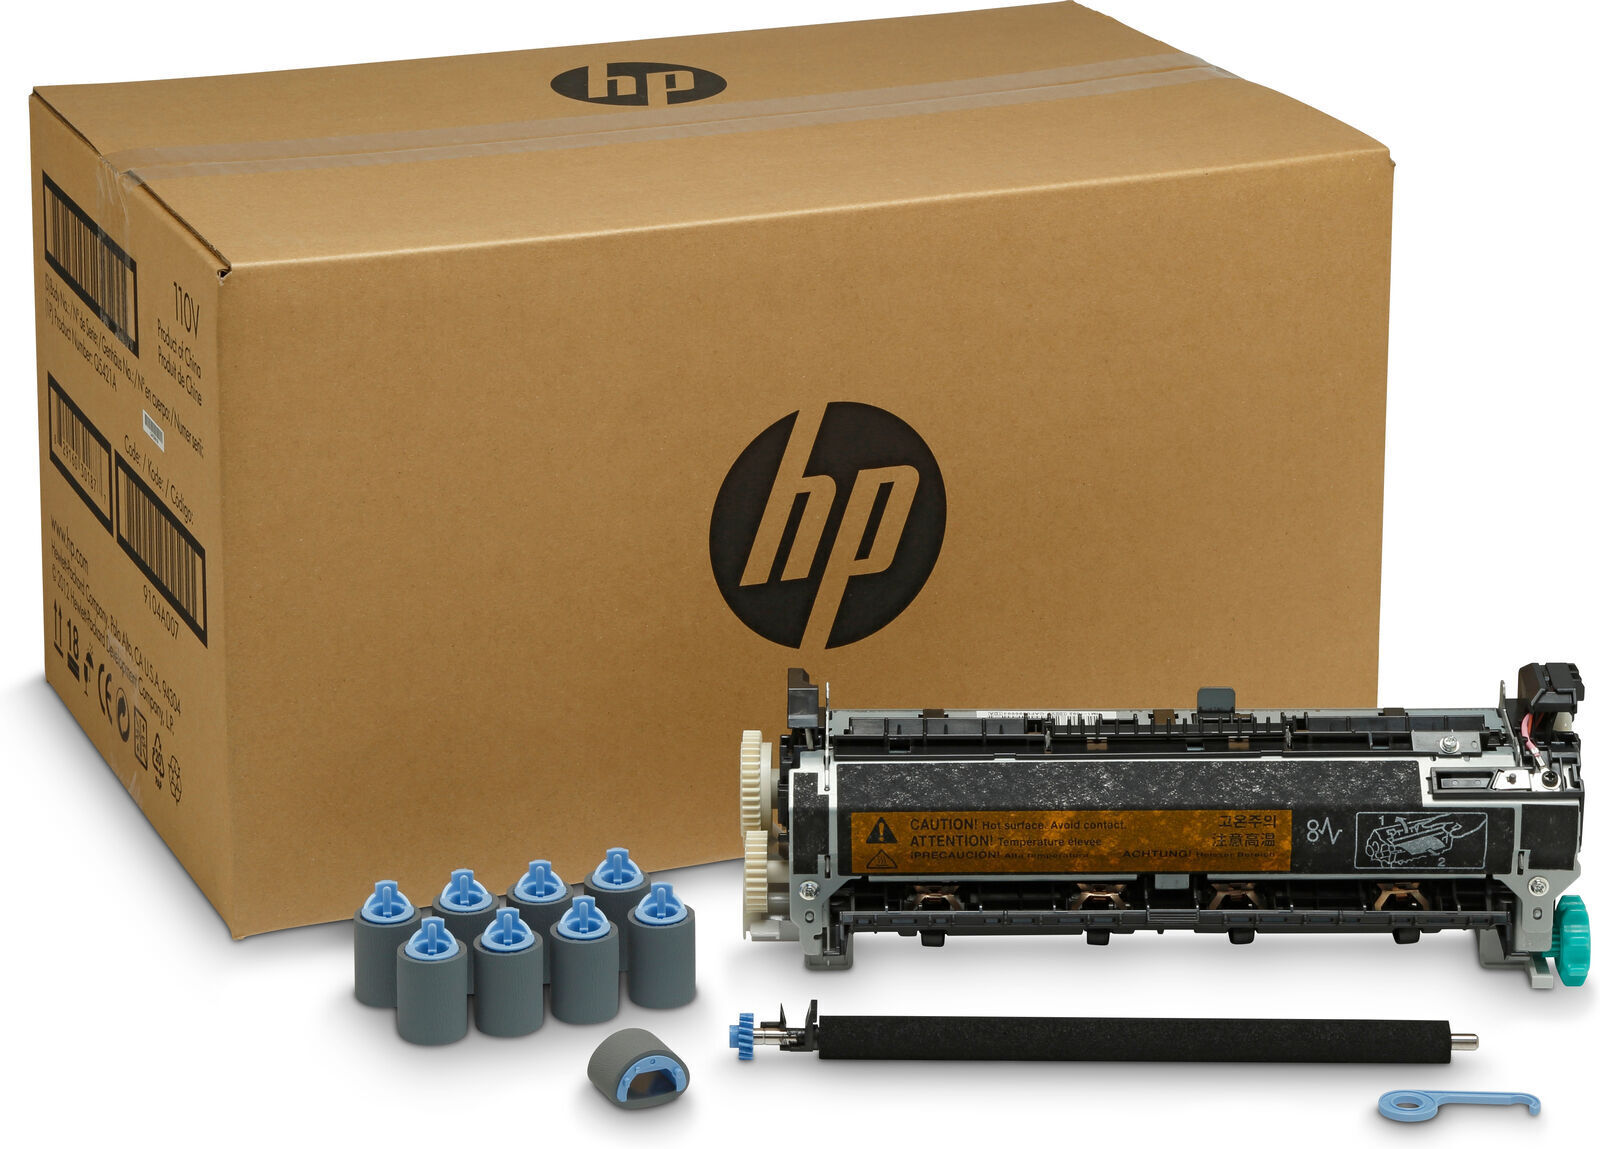 Replacement for HP LaserJet 4250/4350 Maintenance Kit Q5421A, Q5421-67901, Q5421